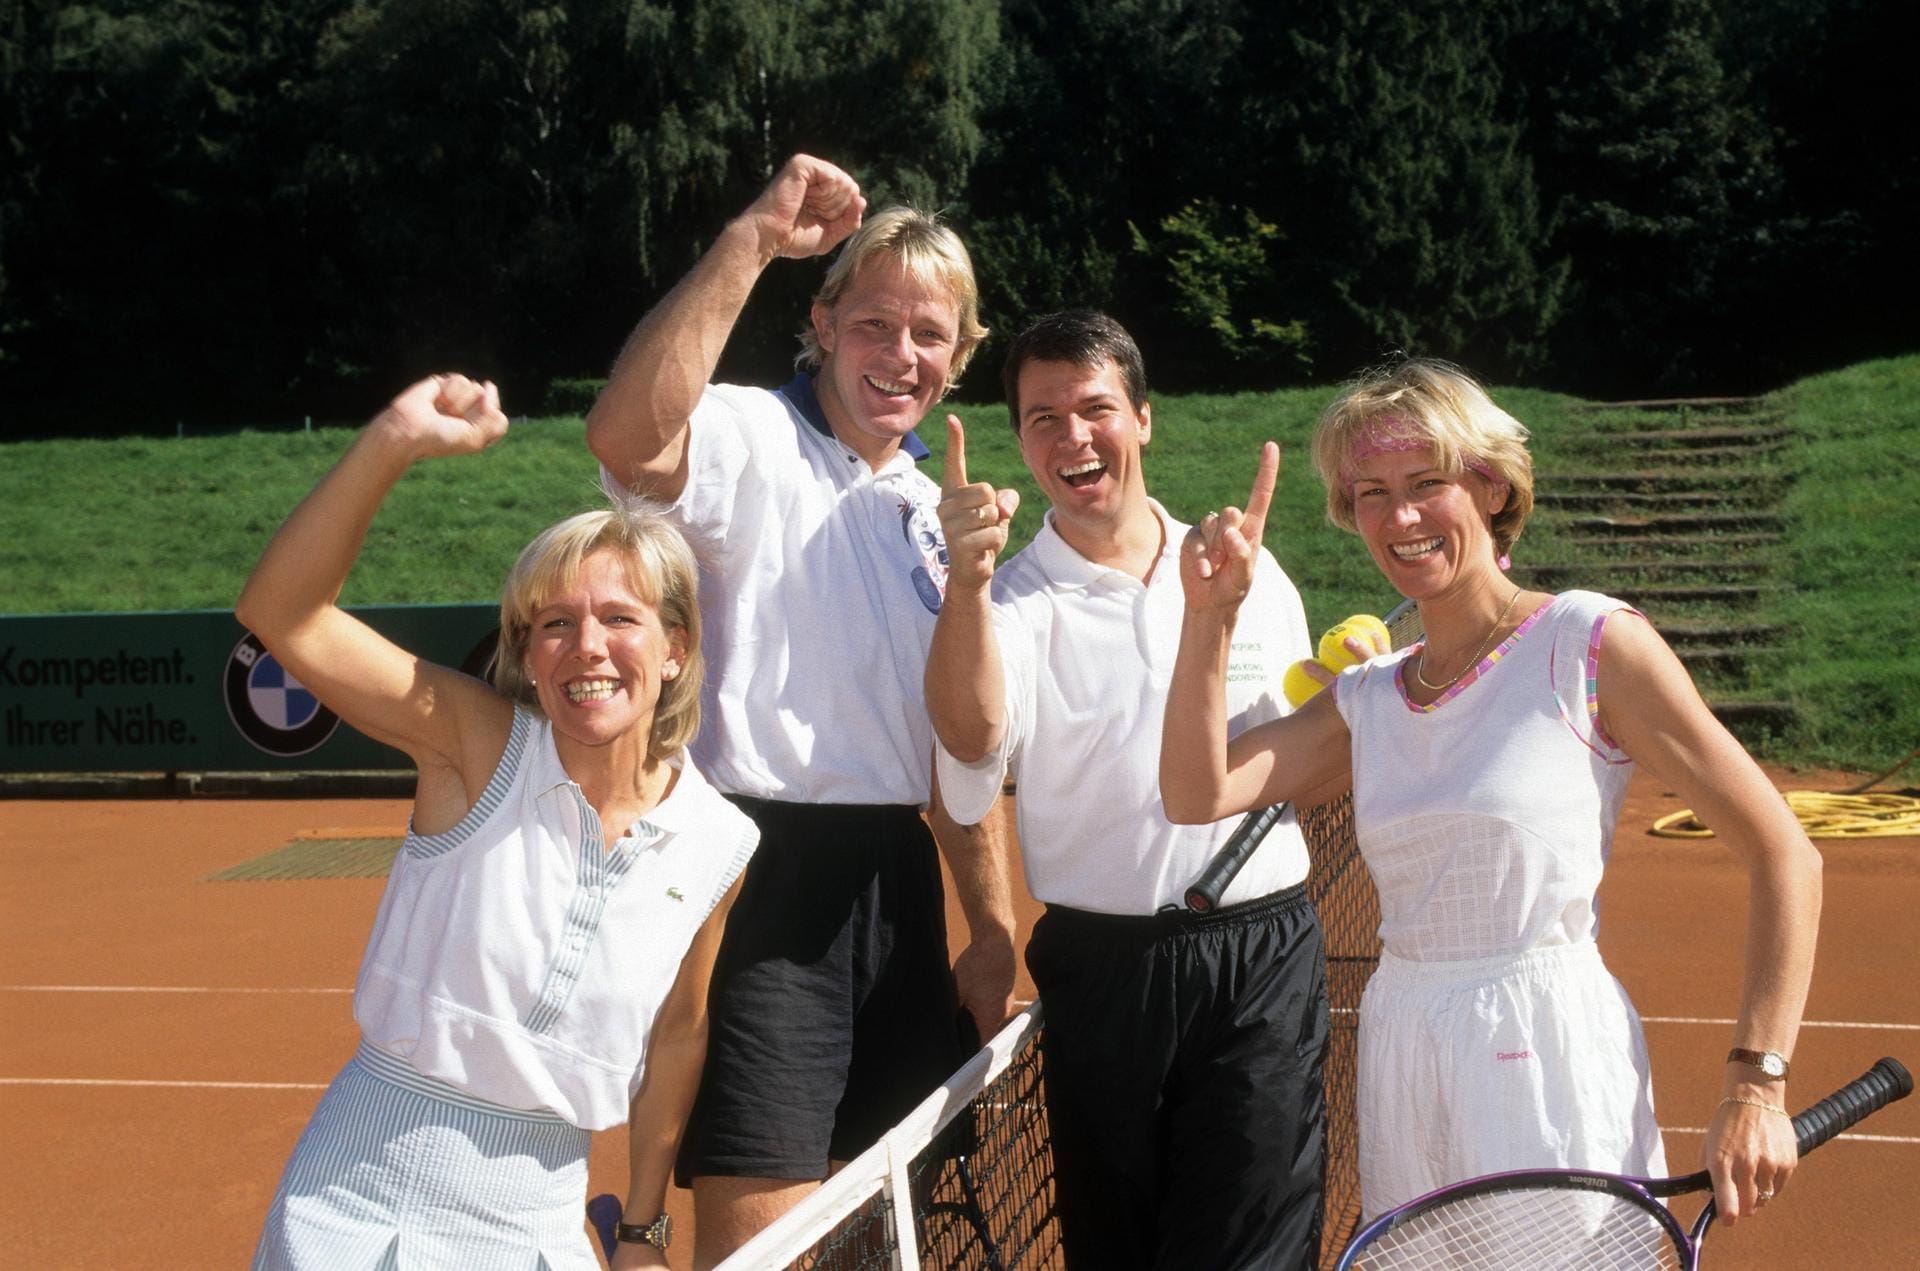 1996: RTL-Nachrichtensprecher beim Tennis – Ulrike von der Groeben (links) mit Ehemann Alexander von der Groeben, Peter Kloeppel mit Ehefrau Carola Kloeppel.